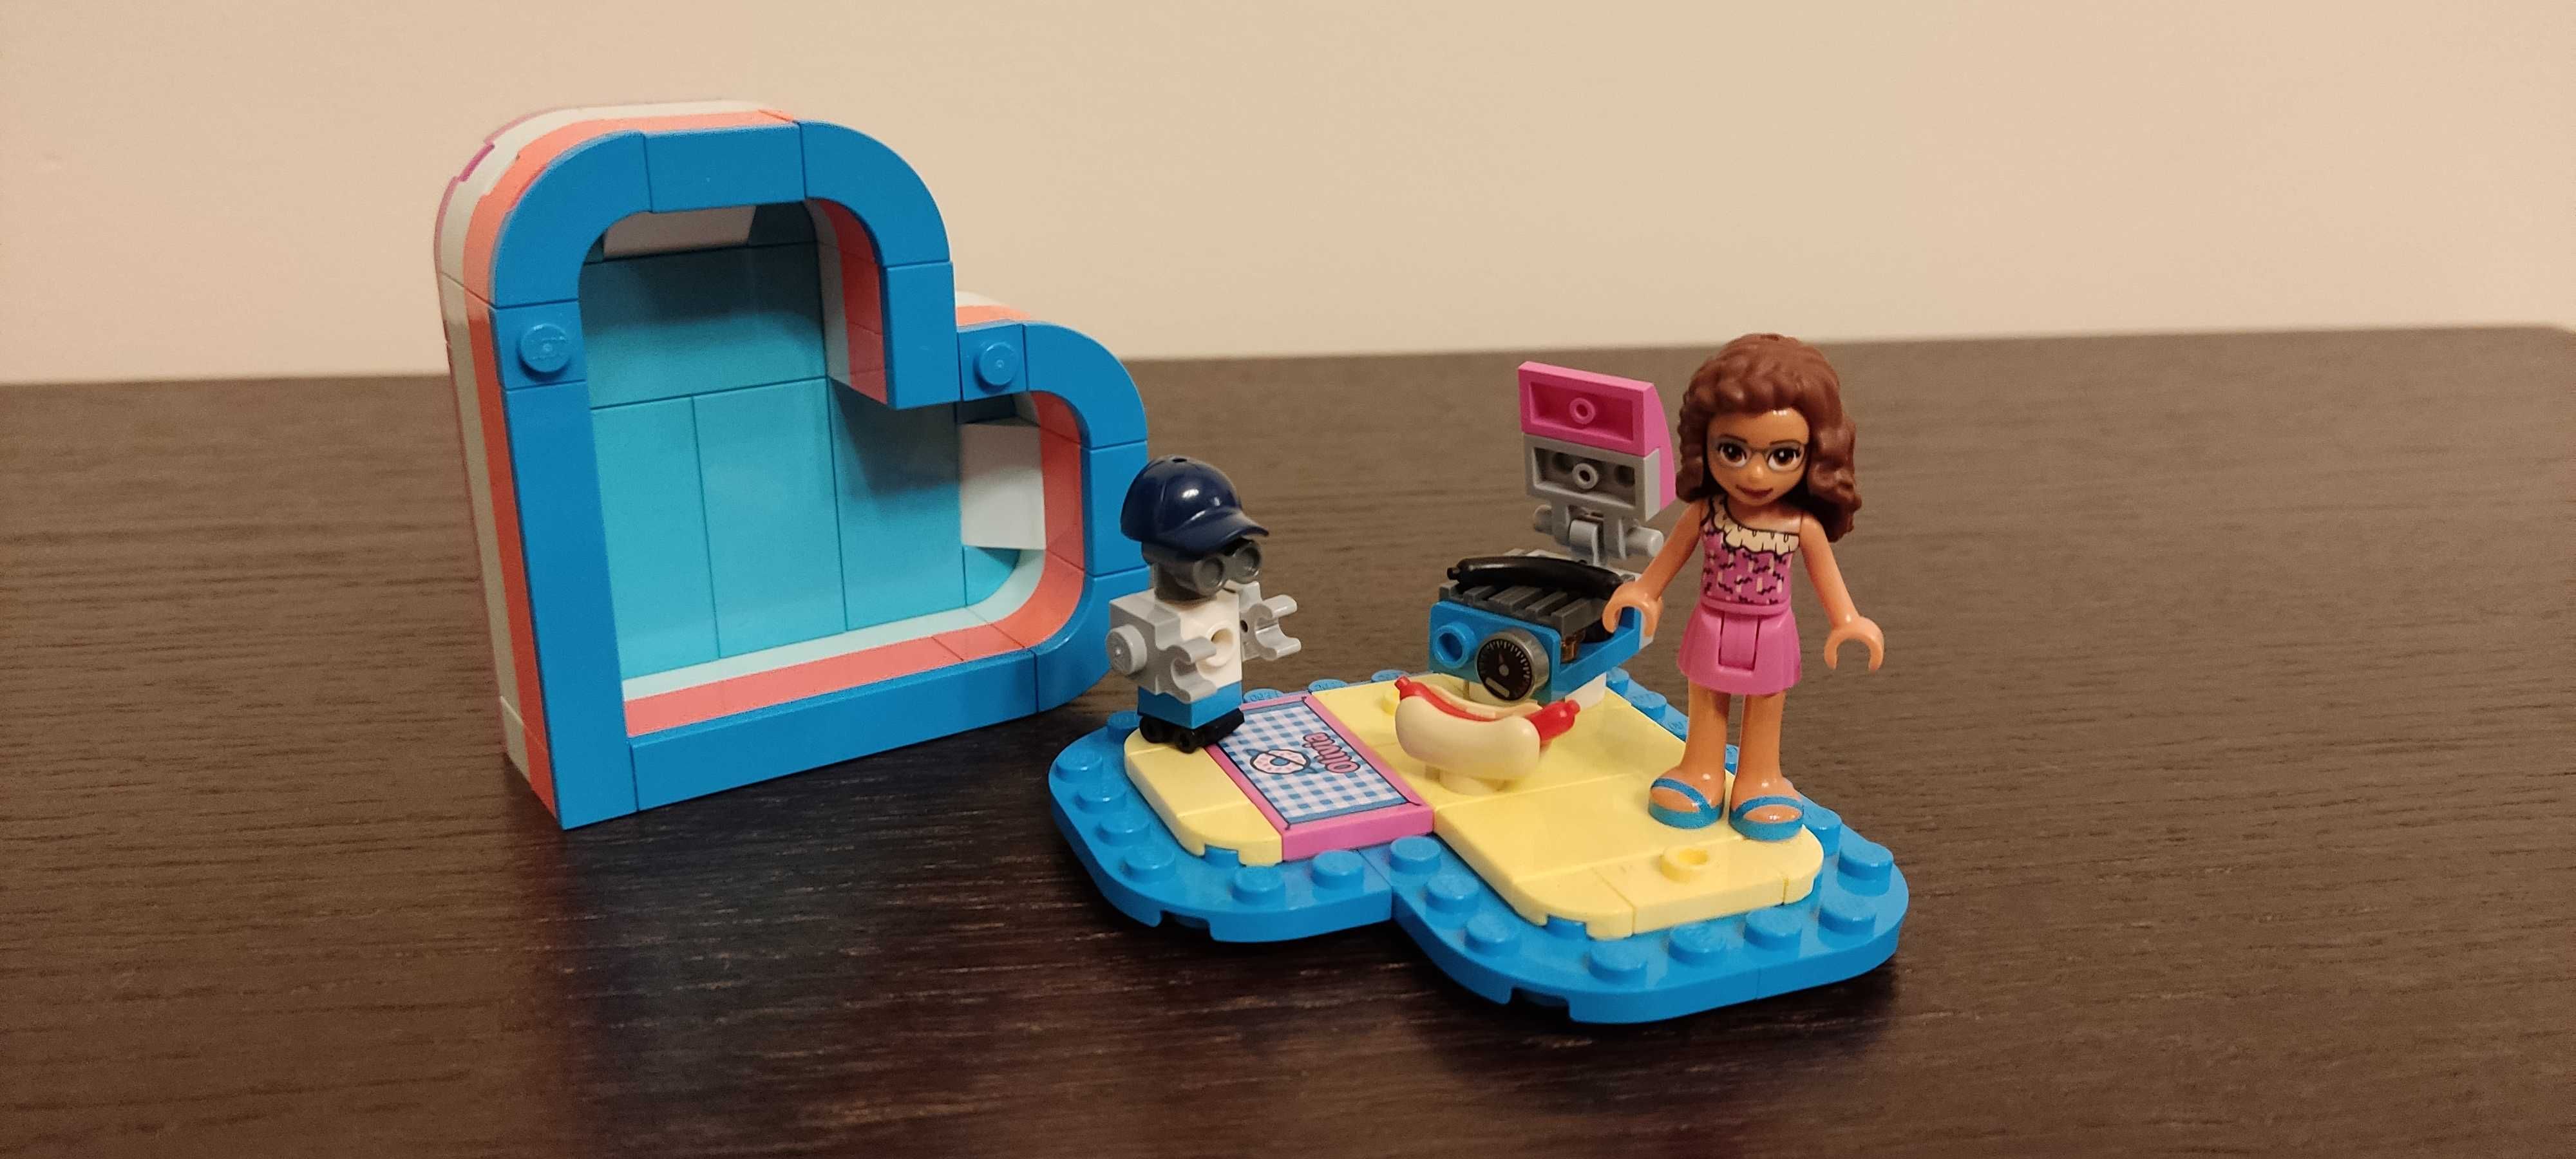 LEGO Pudełko przyjaźni Olivii i Pudełko w kształcie serca Stephanie